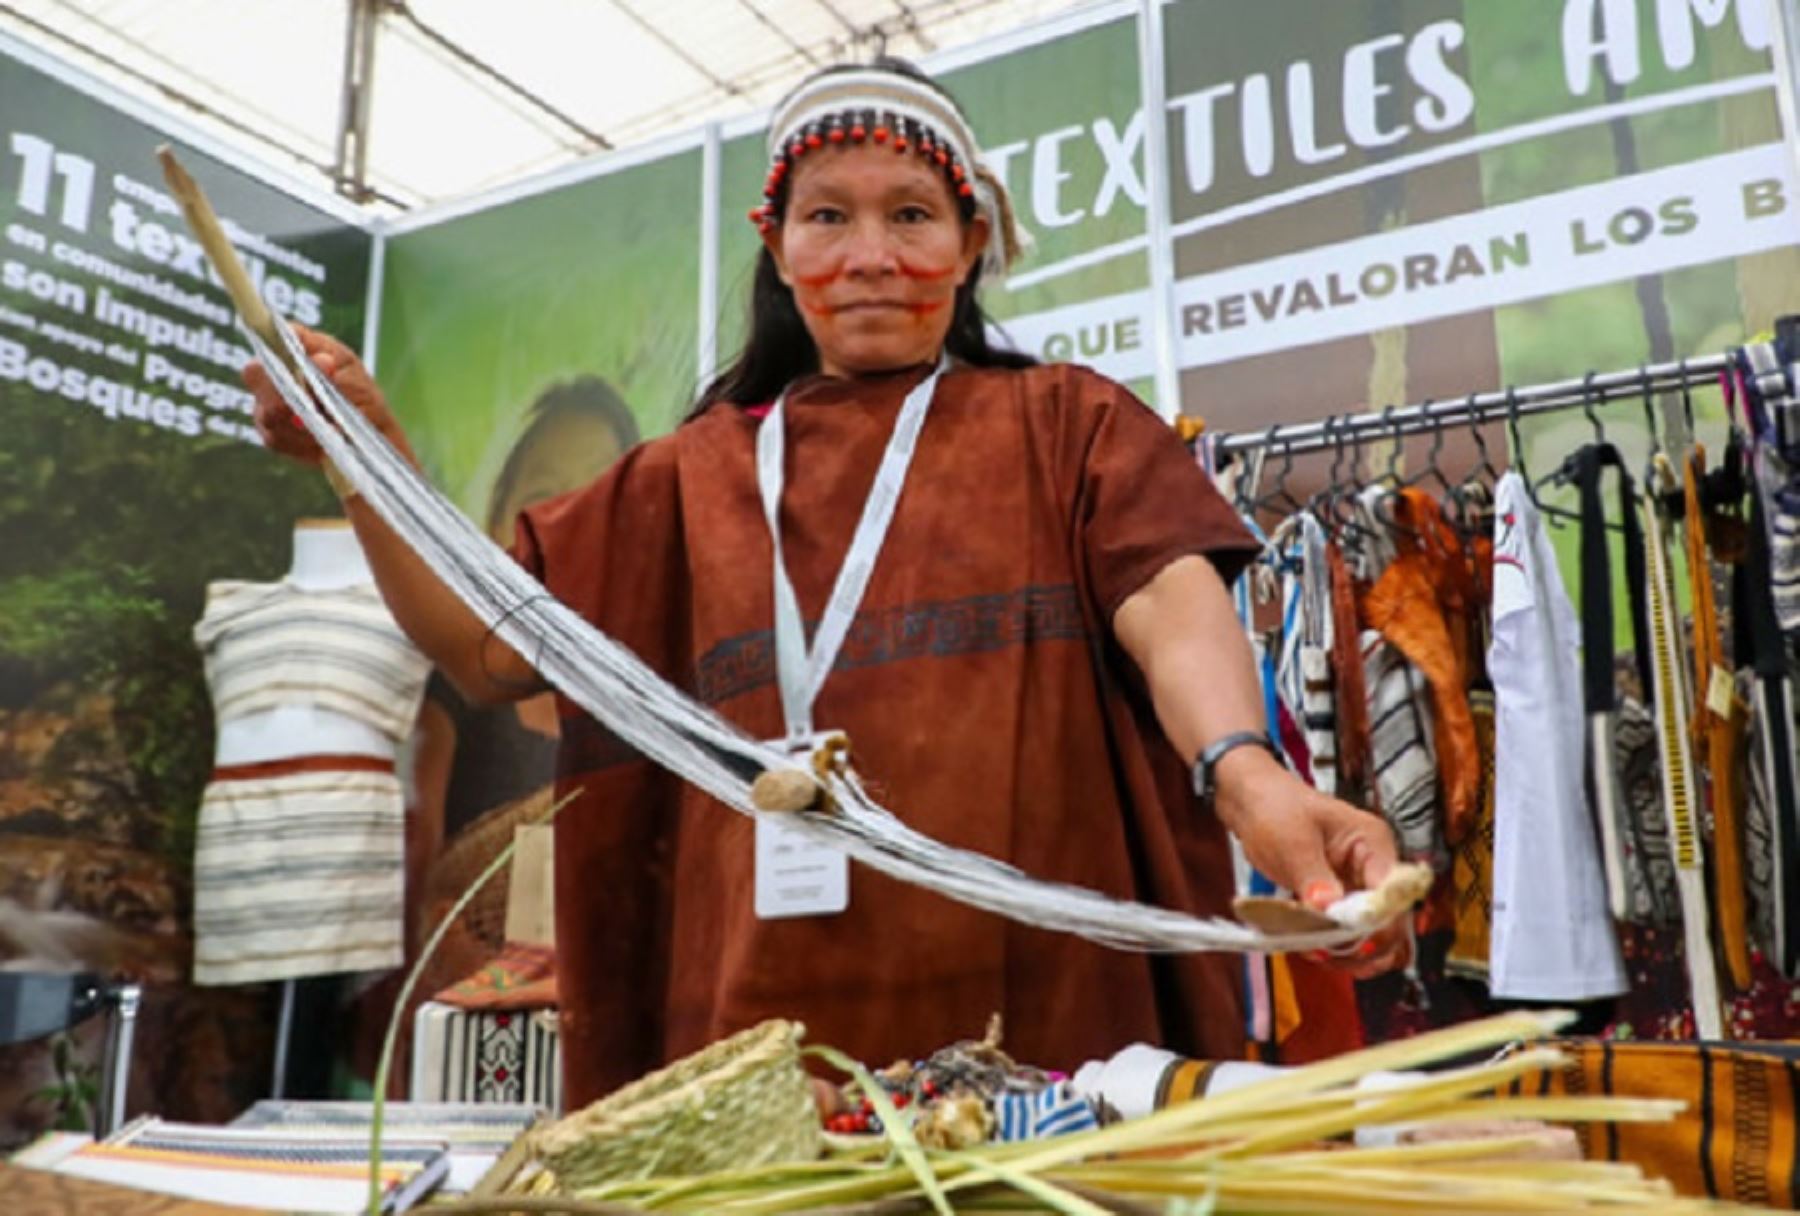 El Ministerio del Ambiente, a través del Programa Nacional de Conservación de Bosques para la Mitigación del Cambio Climático (Programa Bosques), viene impulsando 14 bionegocios textiles que revaloran la cultura indígena y 
contribuyen a la conservación de los ecosistemas boscosos.